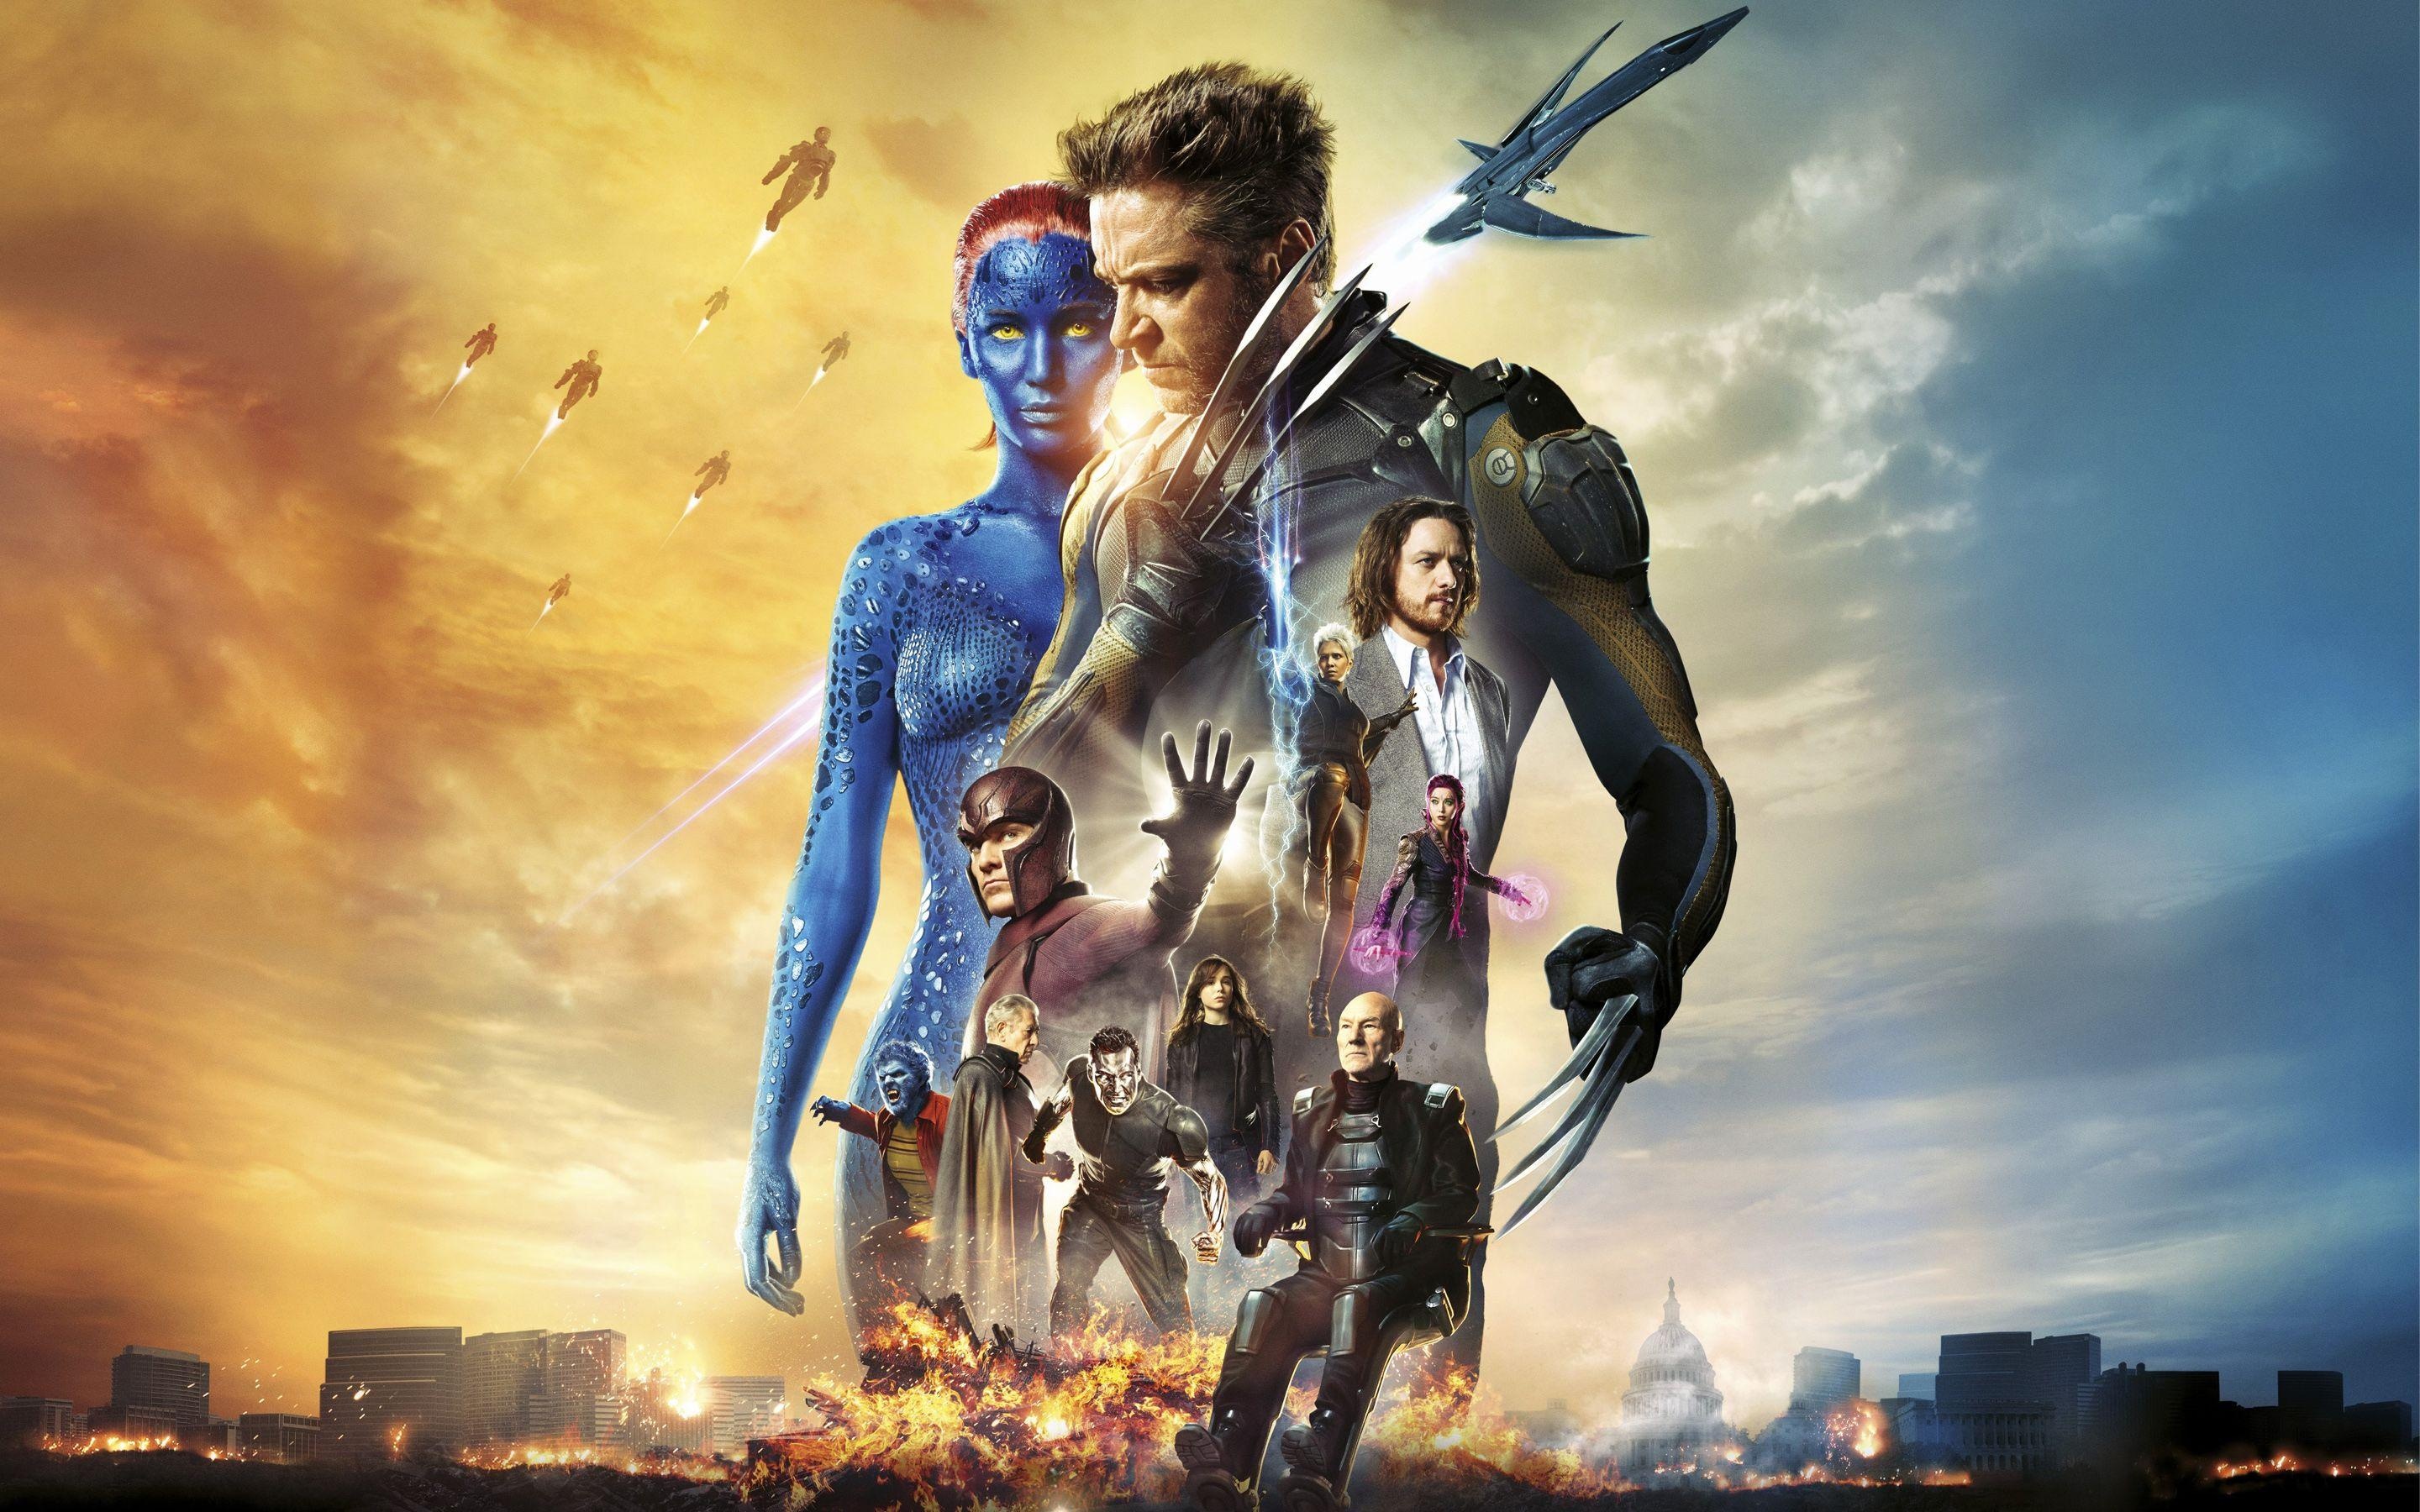 X-Men: Days of Future Past, Dystopian future, Mutant resistance, Battle for survival, 2880x1800 HD Desktop